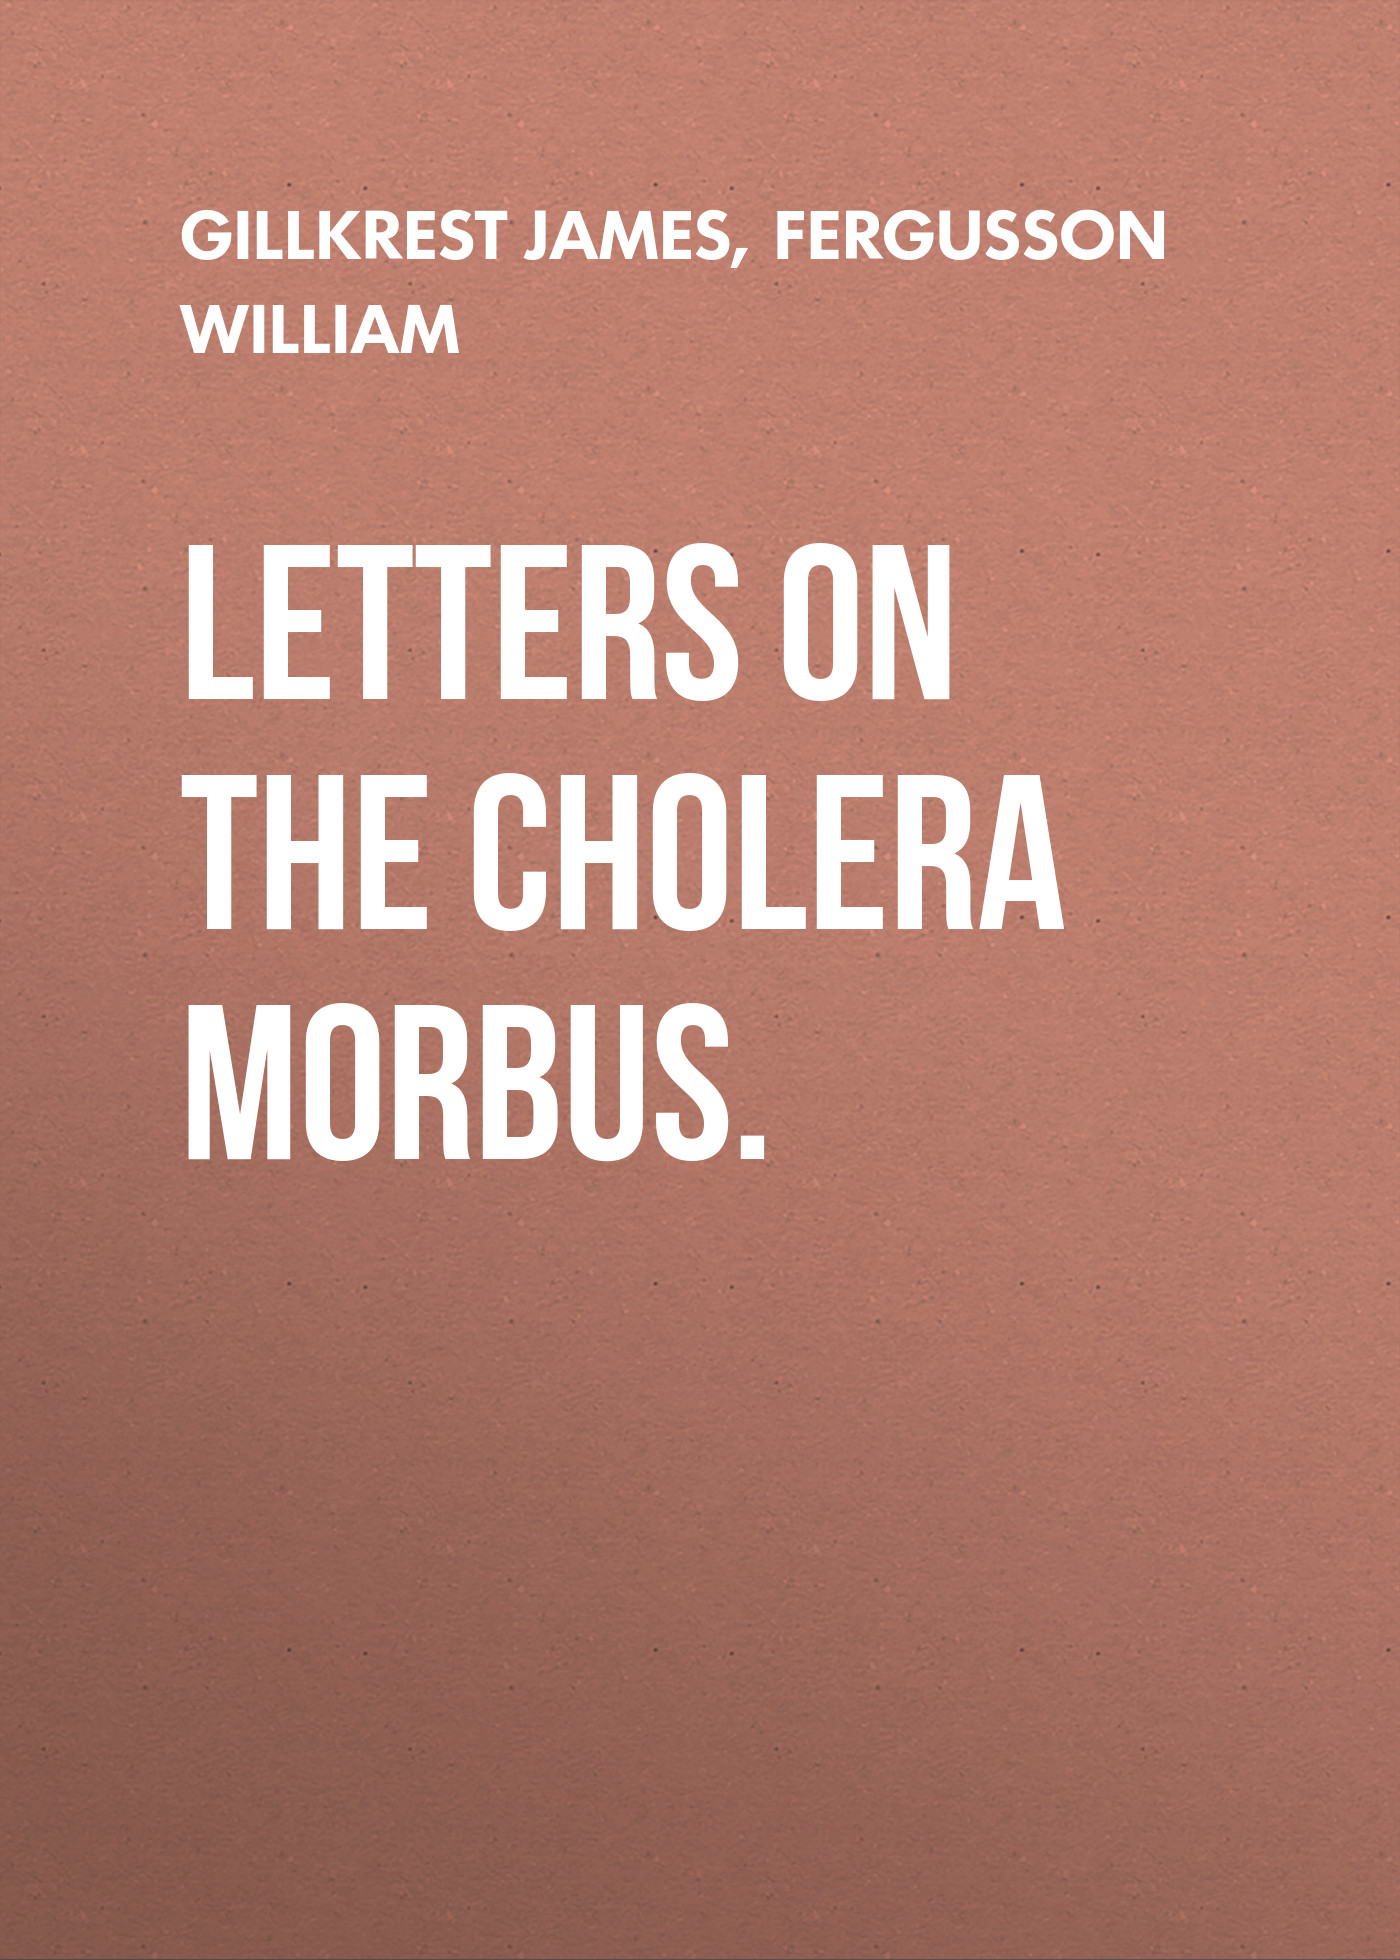 Книга Letters on the Cholera Morbus. из серии , созданная William Fergusson, James Gillkrest, может относится к жанру Медицина, Зарубежная старинная литература, Зарубежная классика. Стоимость электронной книги Letters on the Cholera Morbus. с идентификатором 24726825 составляет 0 руб.